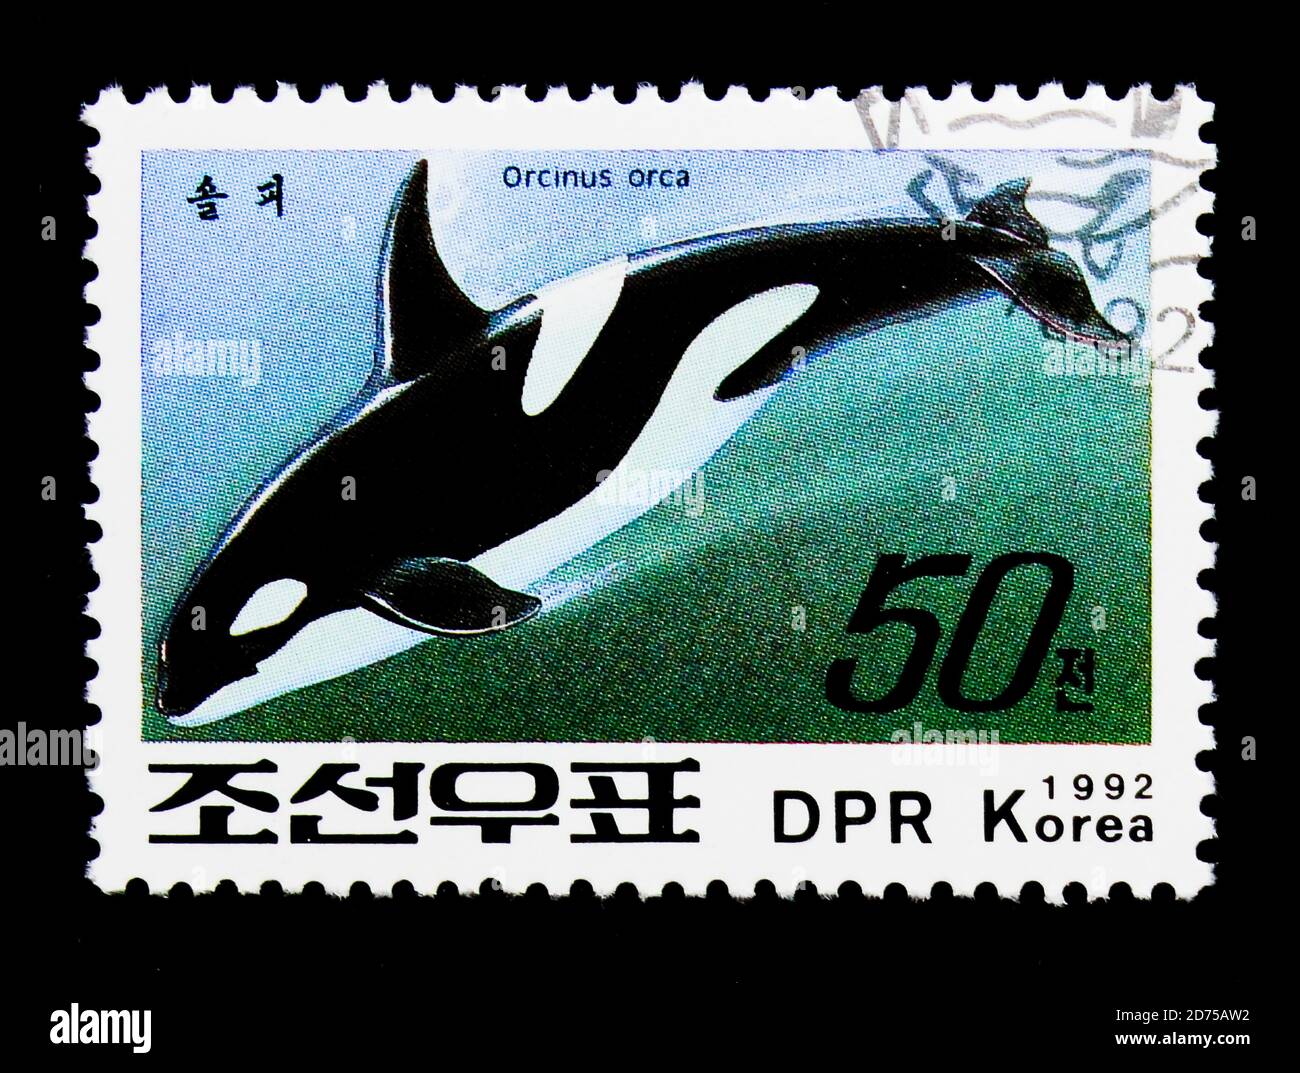 MOSCOU, RUSSIE - 25 NOVEMBRE 2017 : un timbre imprimé en république populaire démocratique de Corée montre la Baleine noire (Orcinus orca), série, vers 1992 Banque D'Images